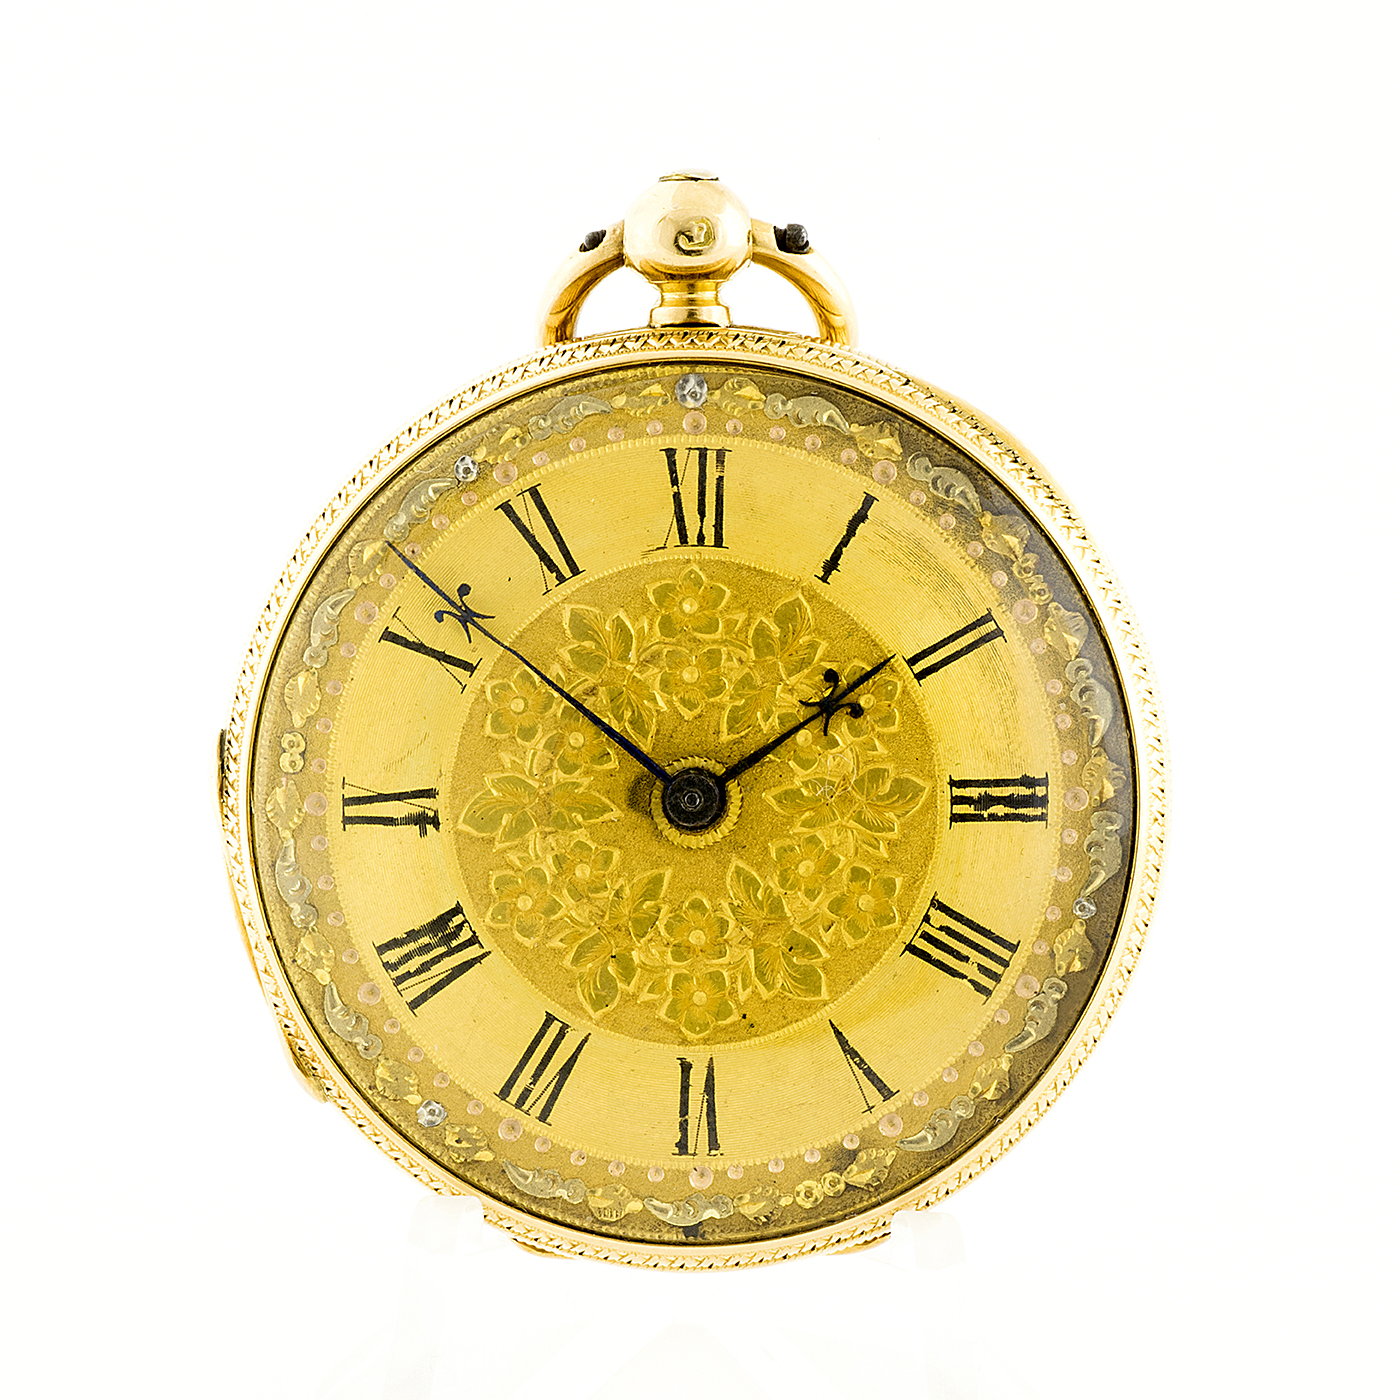 Andrew Aitken Greenoch. Reloj de Bolsillo-Colgar para señora, lepine. Londres, 1876. Oro 18k.